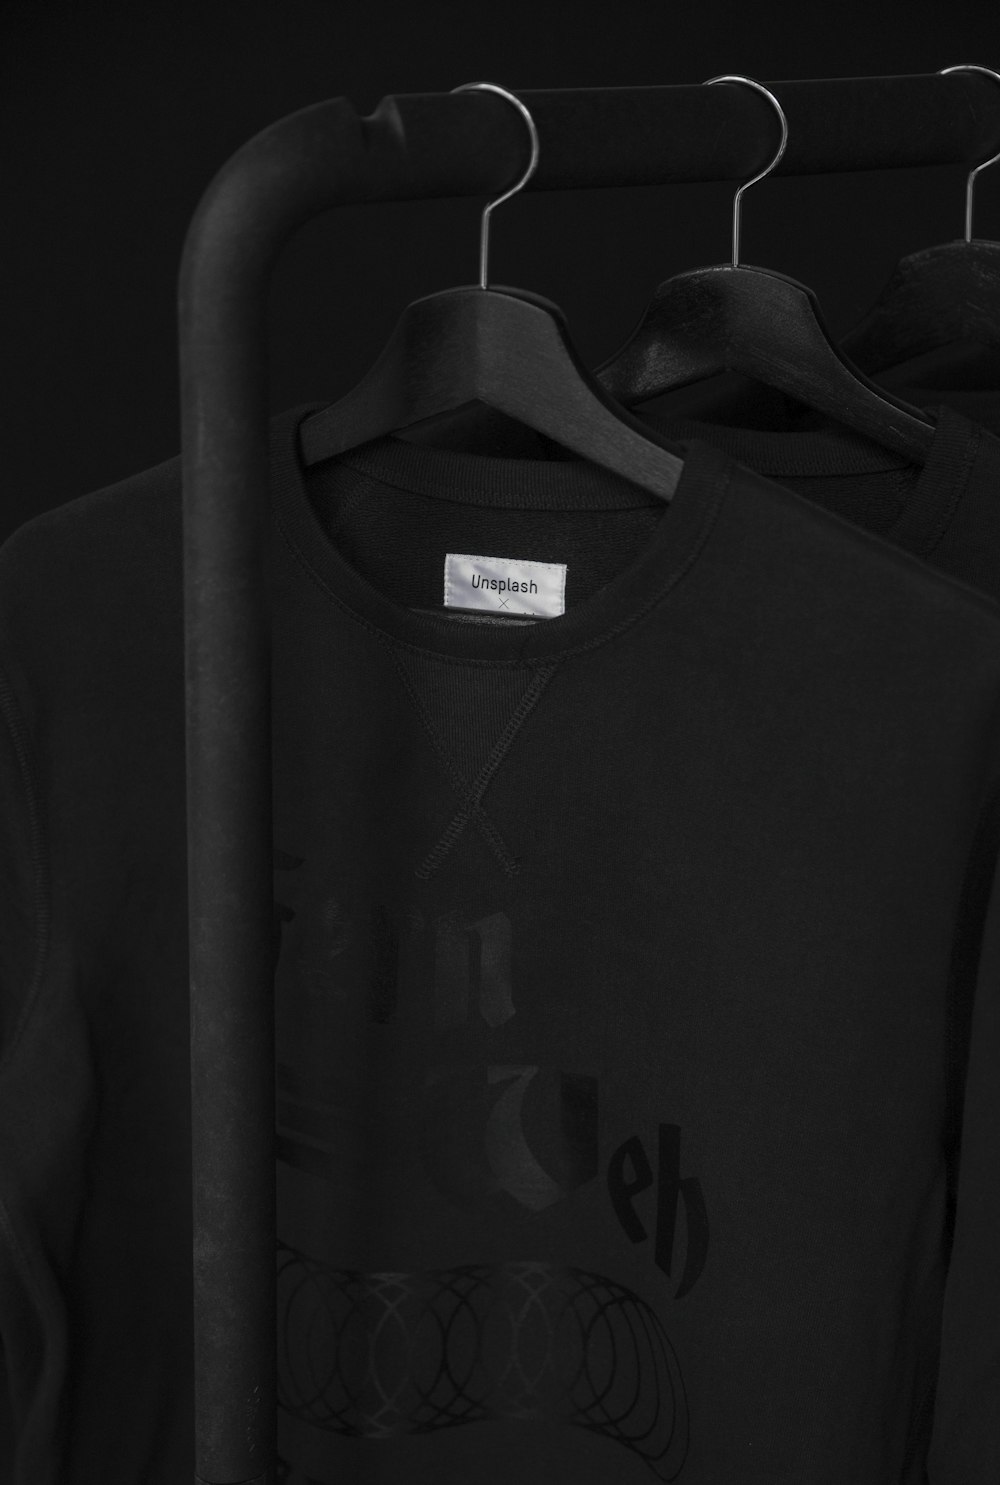 schwarzes T-Shirt mit Rundhalsausschnitt auf Kleiderbügel